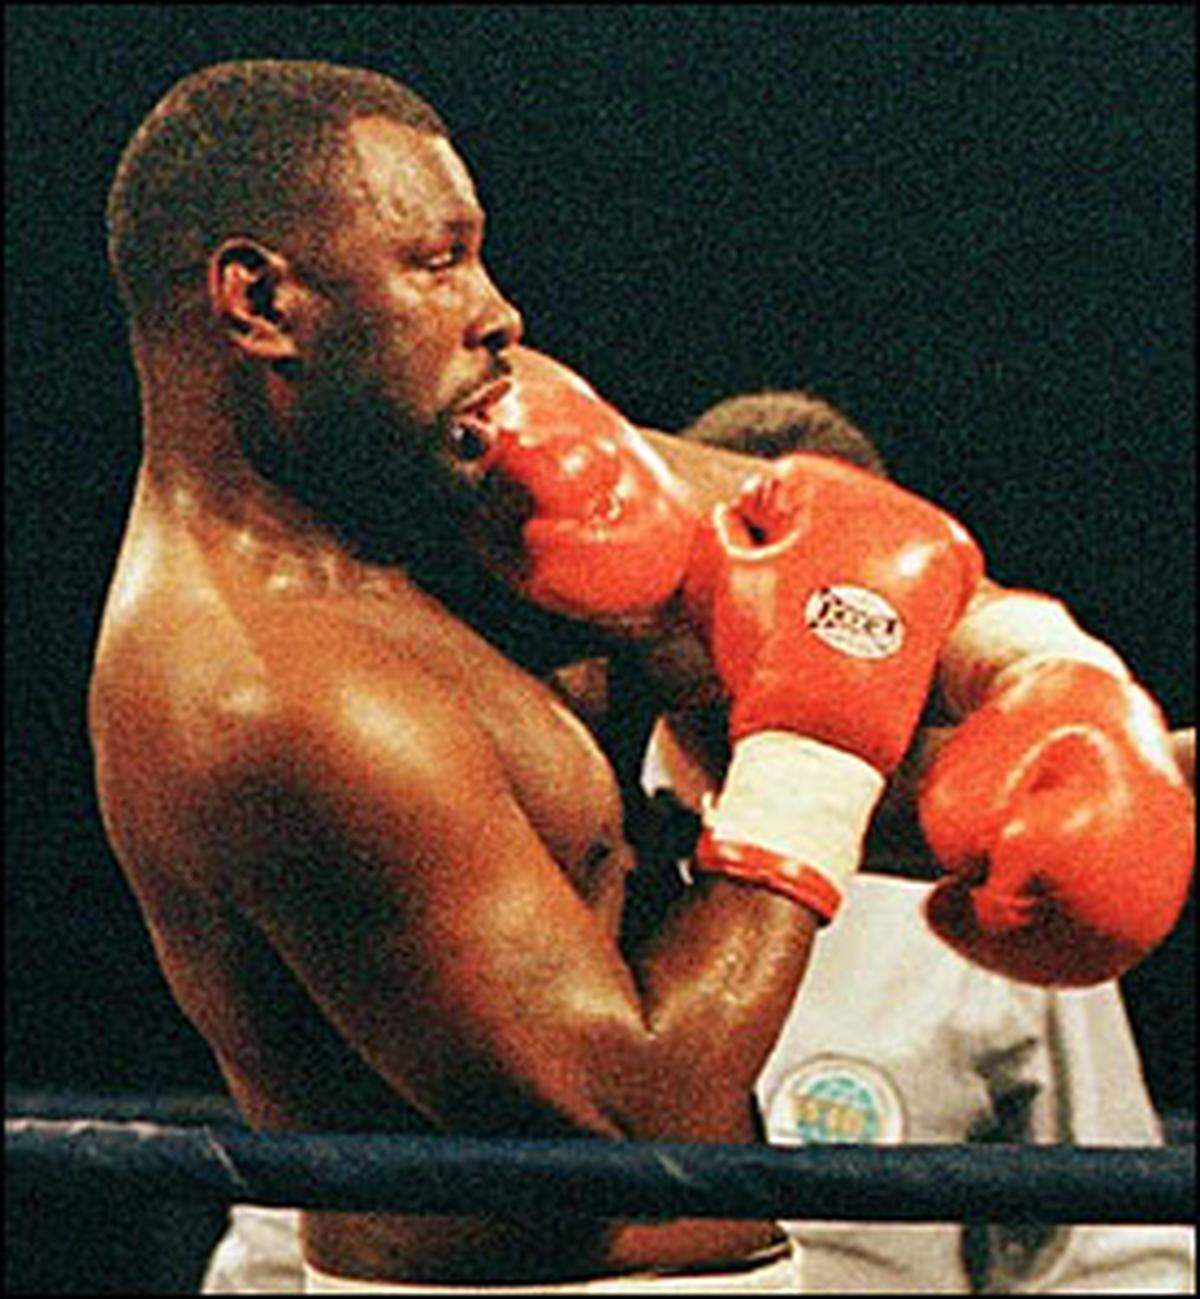 Am 1. August 1987 vollzog Tyson die Vereinigung aller Titel: Gegen Tony Tucker gewann er auch den IBF-Titel holte, von nun an war er unumstrittener Schwergewichtsweltmeister aller Verbände.